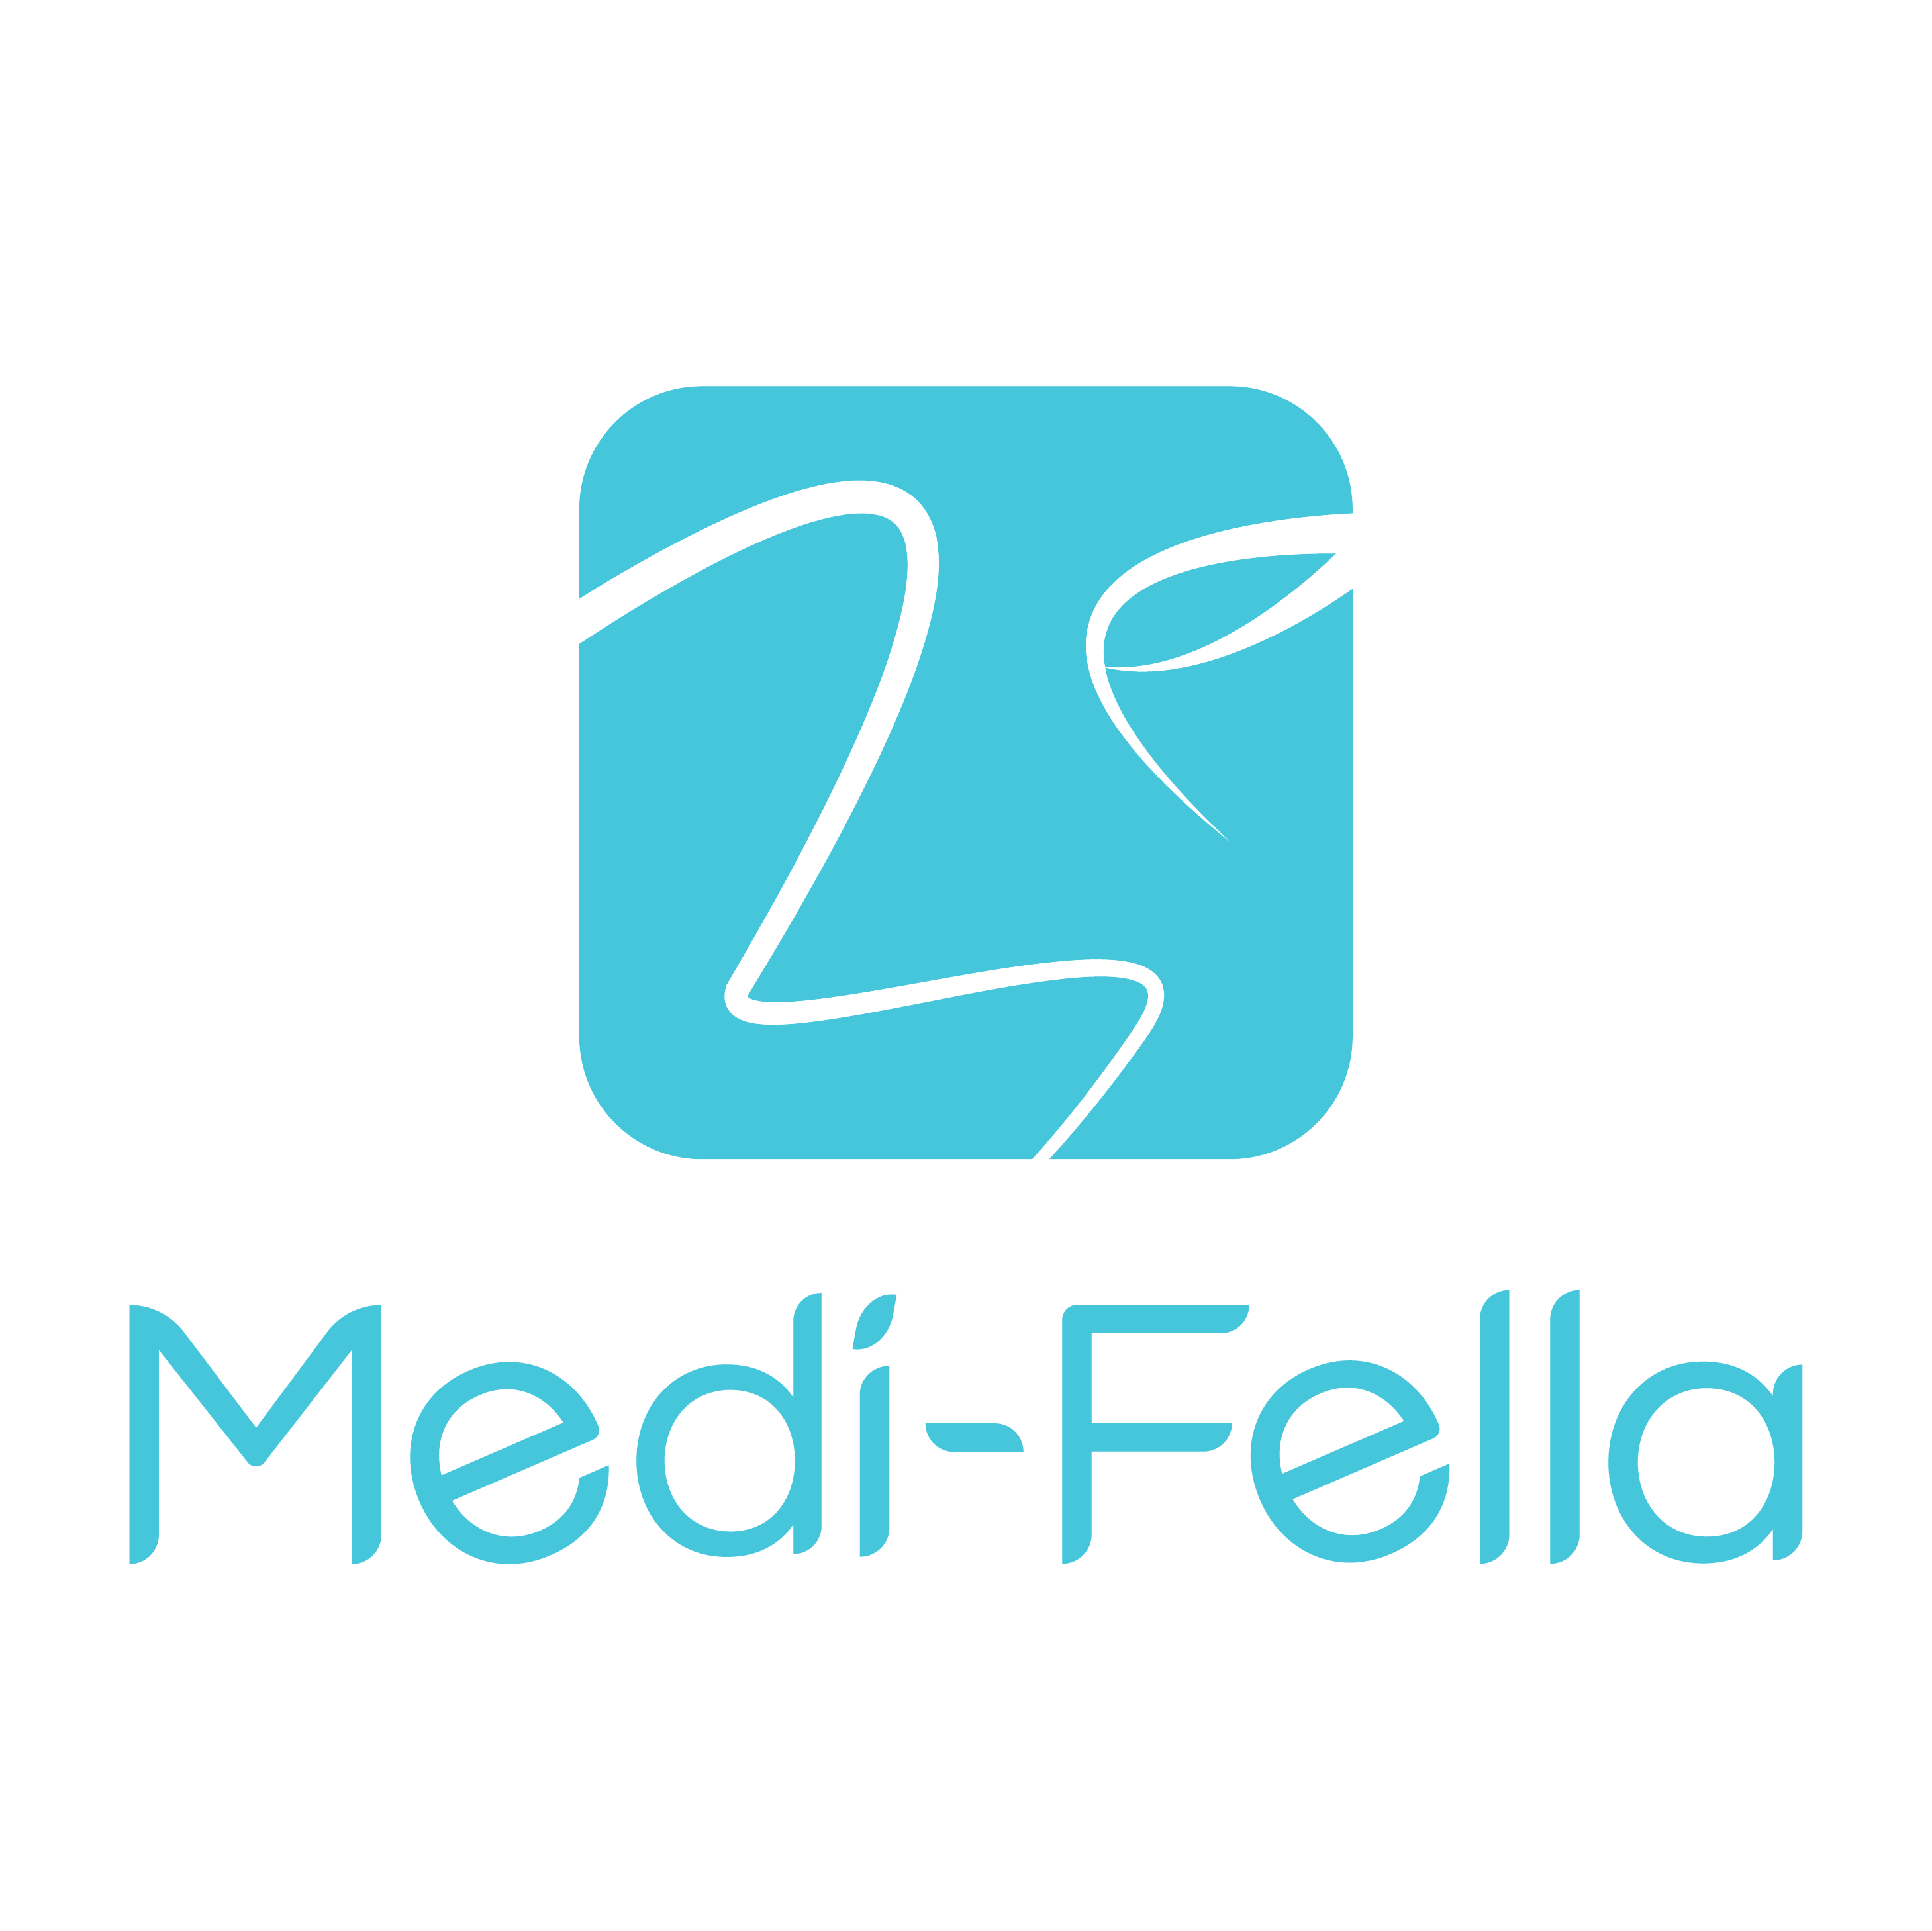 Medi-fella Ltd.